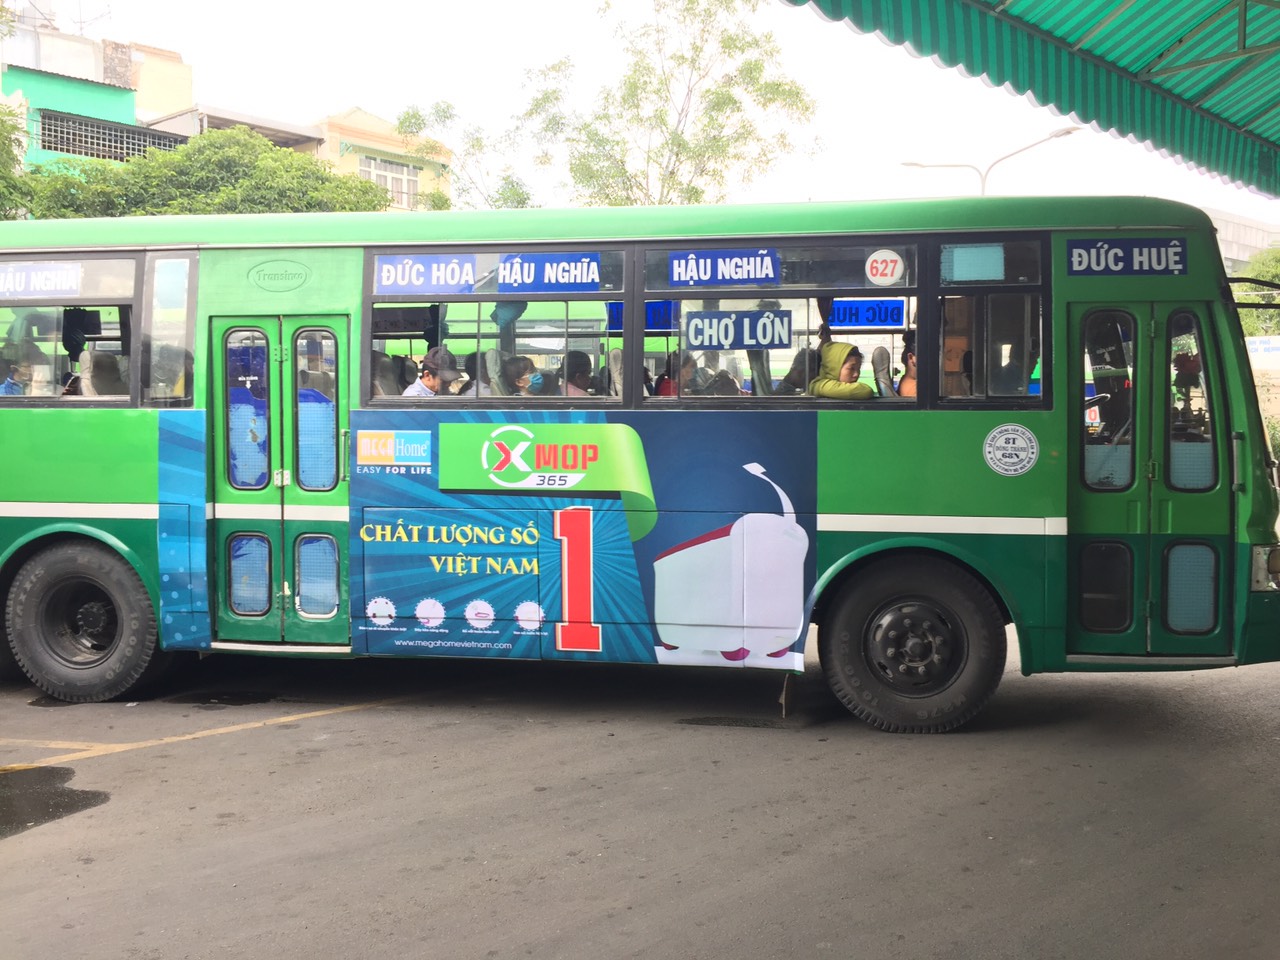 Quảng cáo xe bus tuyến 627 - Xe bus Hồ Chí Minh